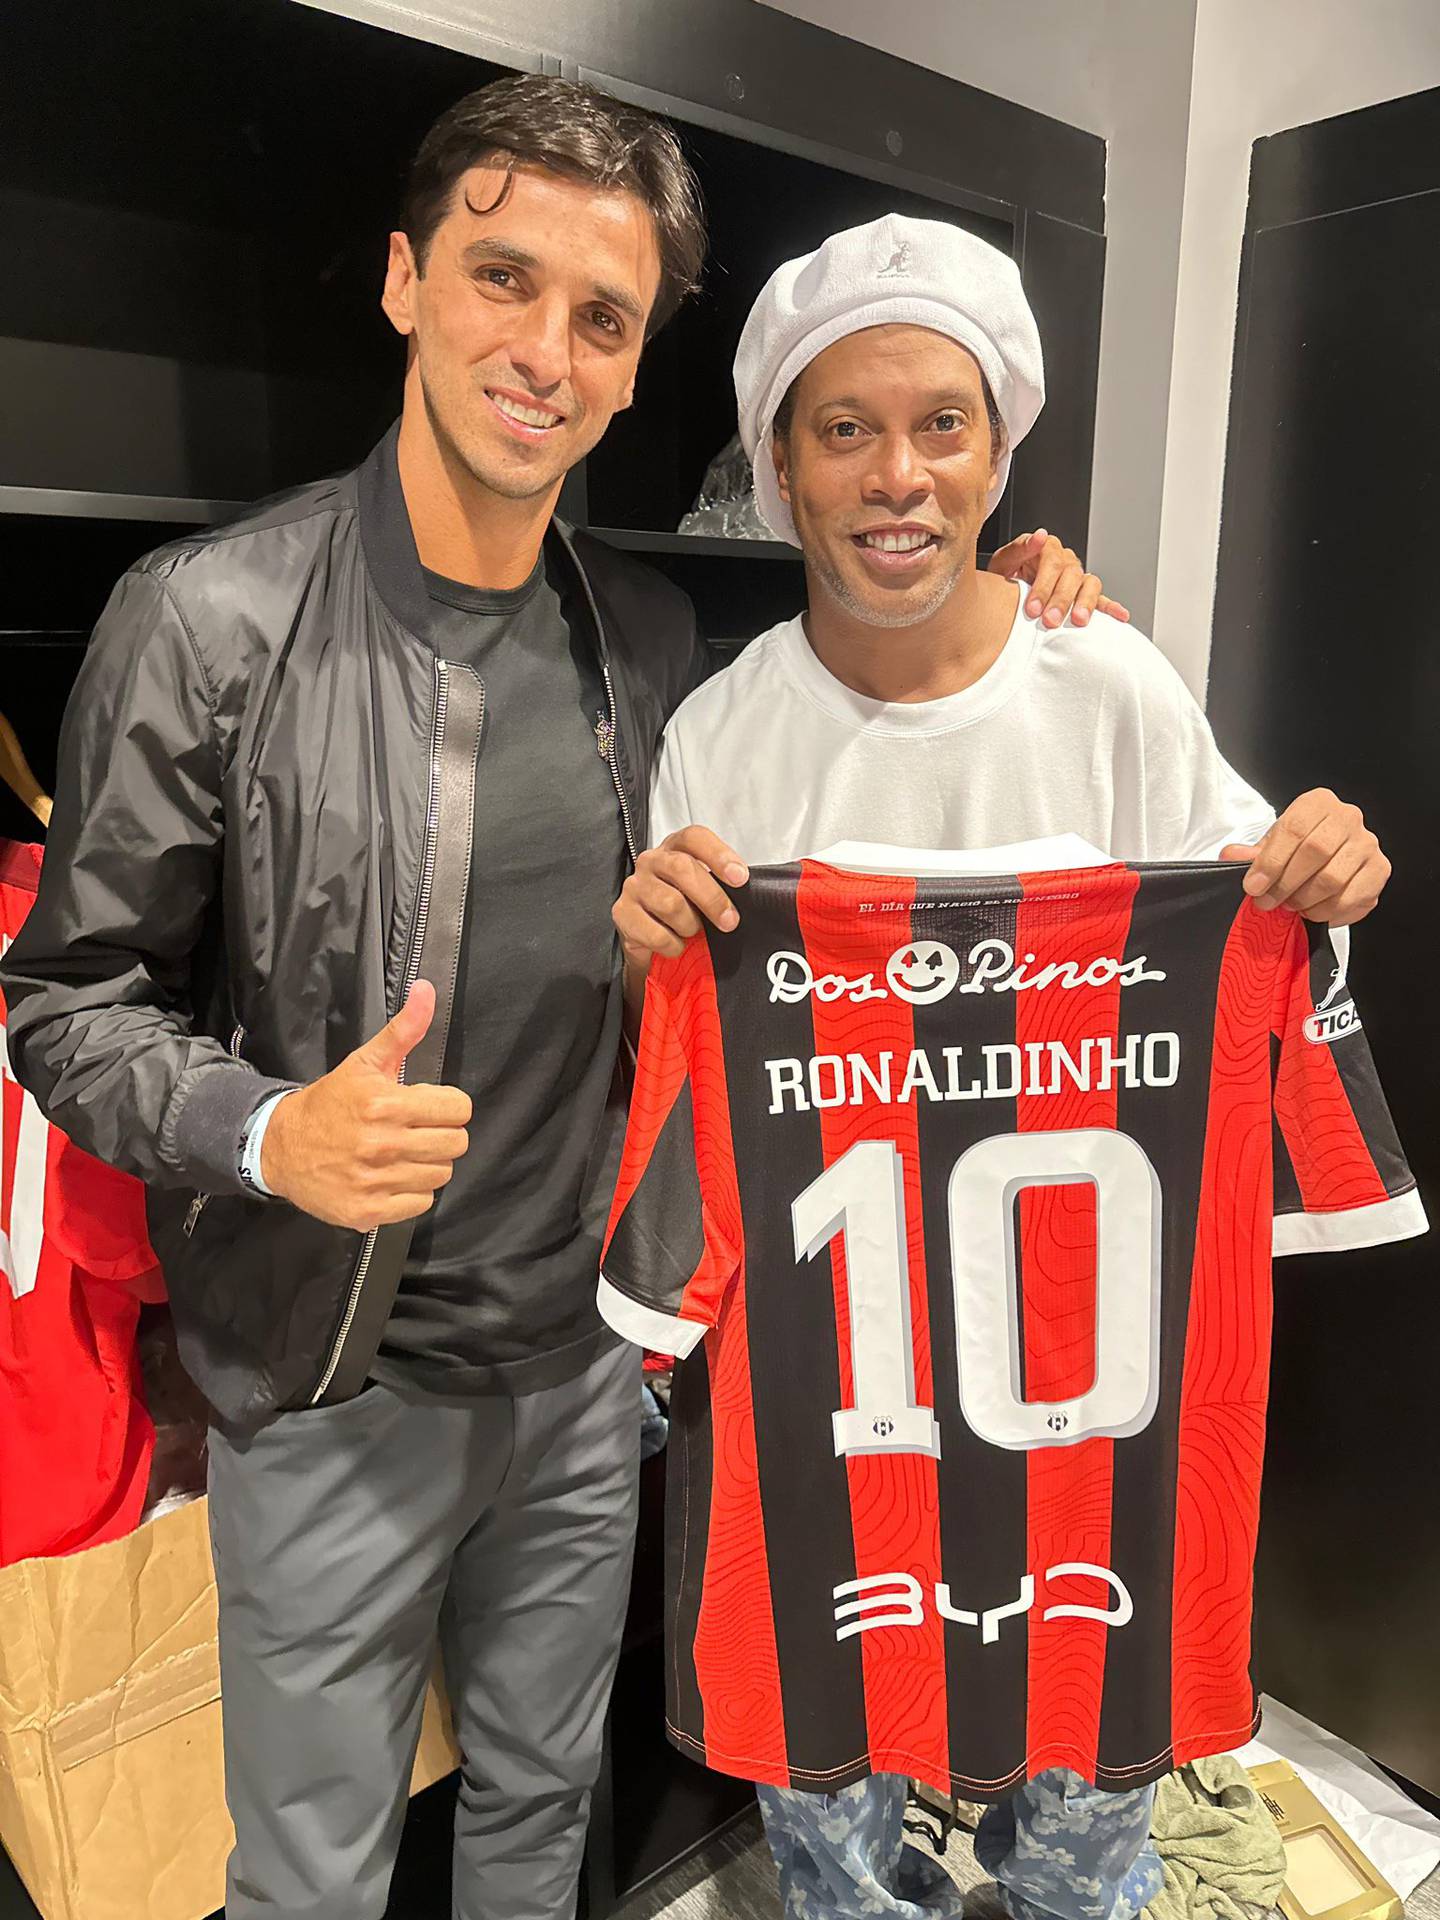 Bryan Ruiz jugó junto a Ronaldinho en el partido de leyendas de Conmebol y le dio la camisa de Liga Deportiva Alajuelense como obsequio.